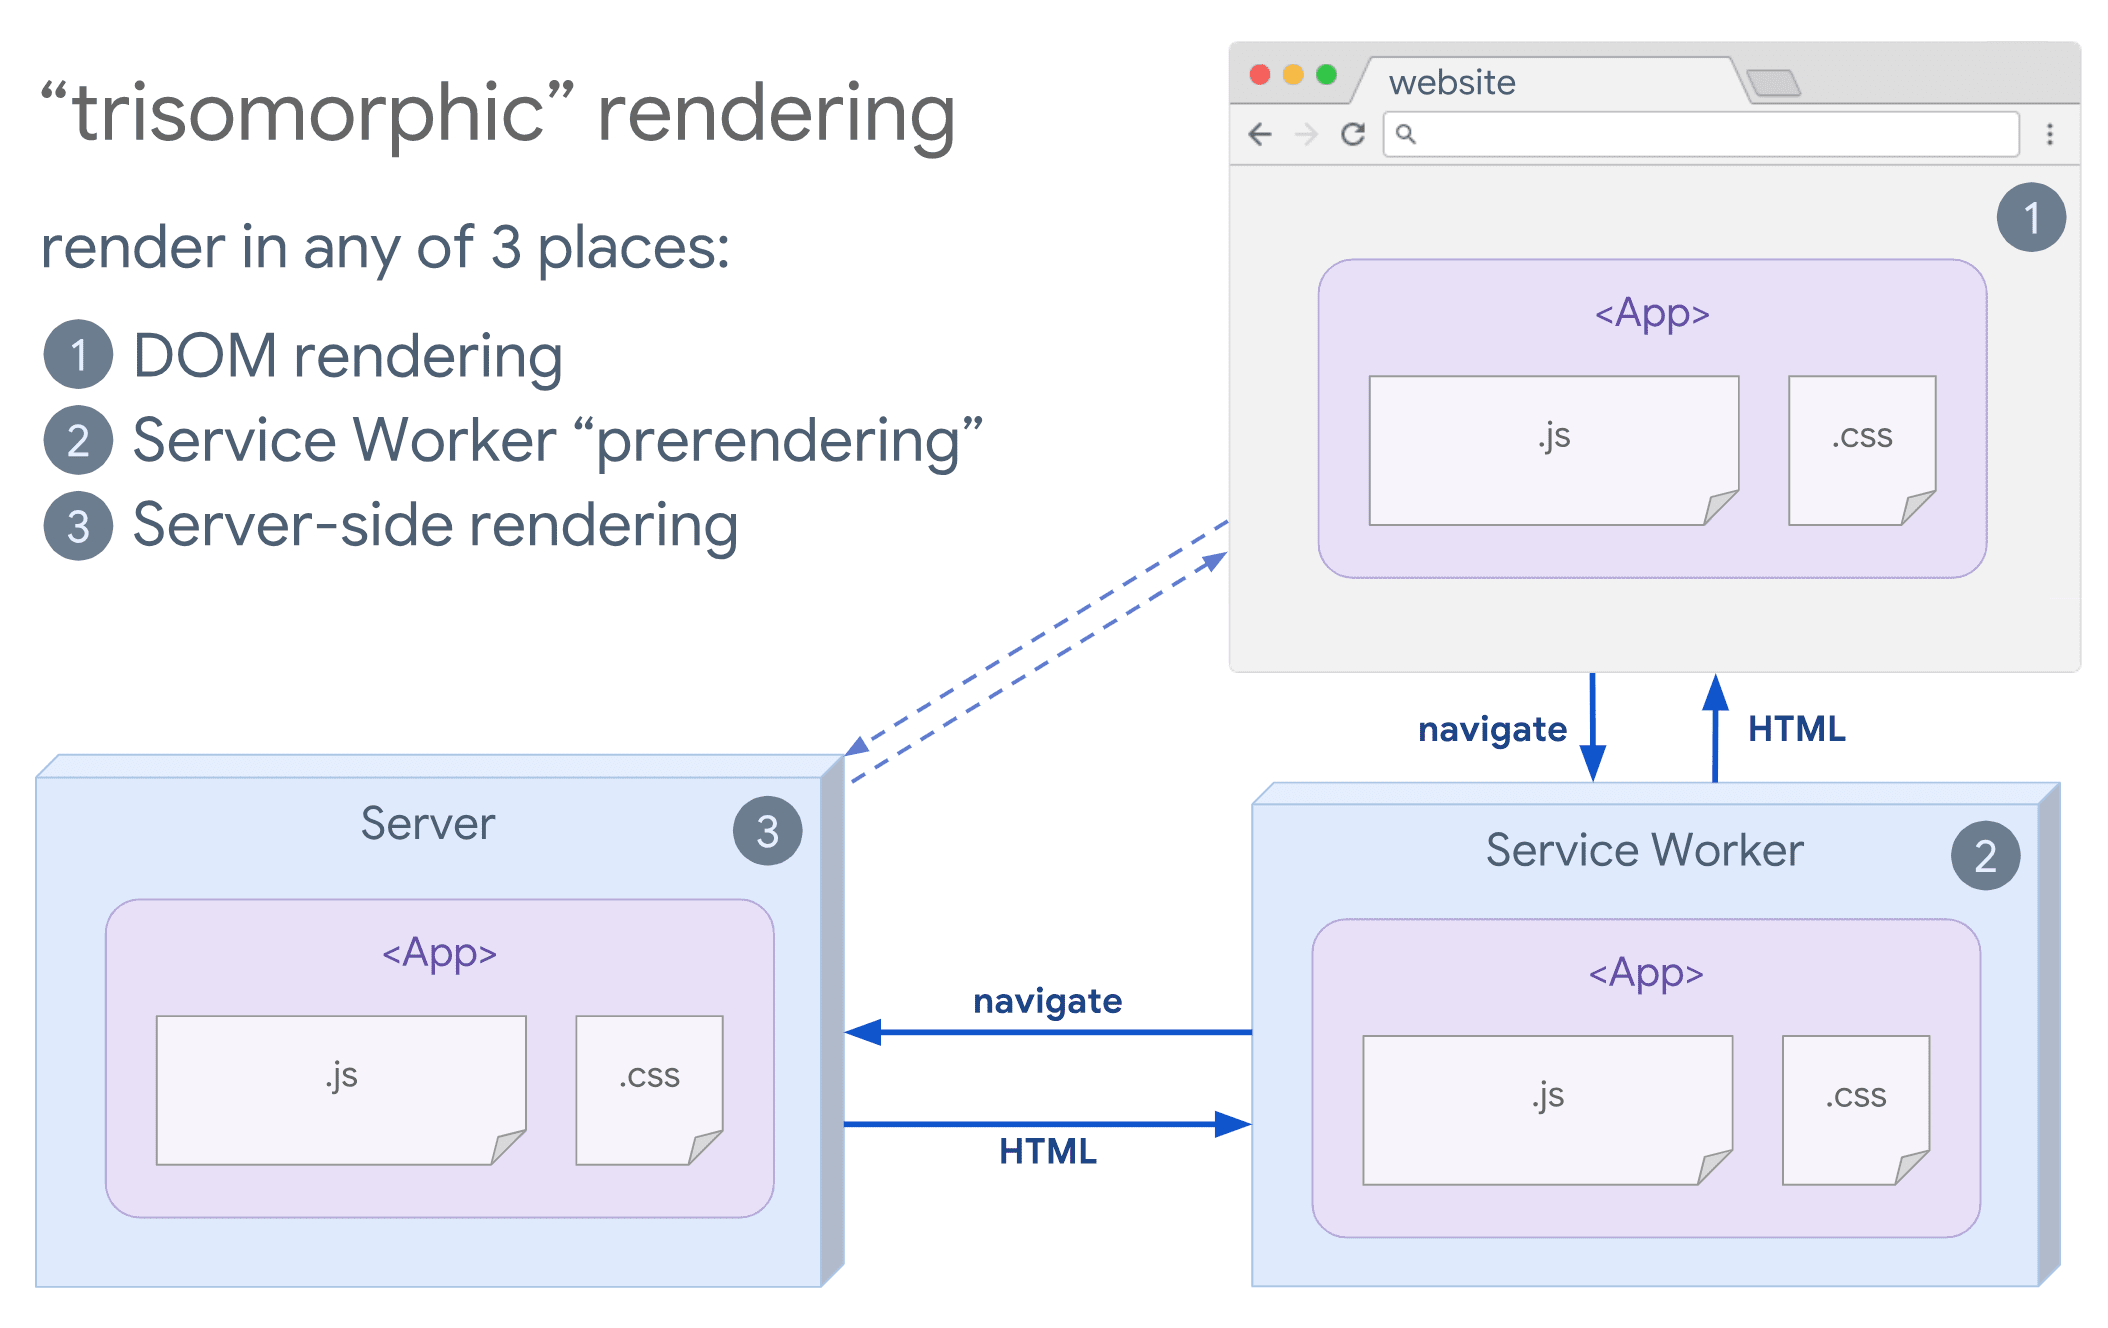 Diagrama de renderização trisomórfica, mostrando um navegador e um service worker se comunicando com o servidor.